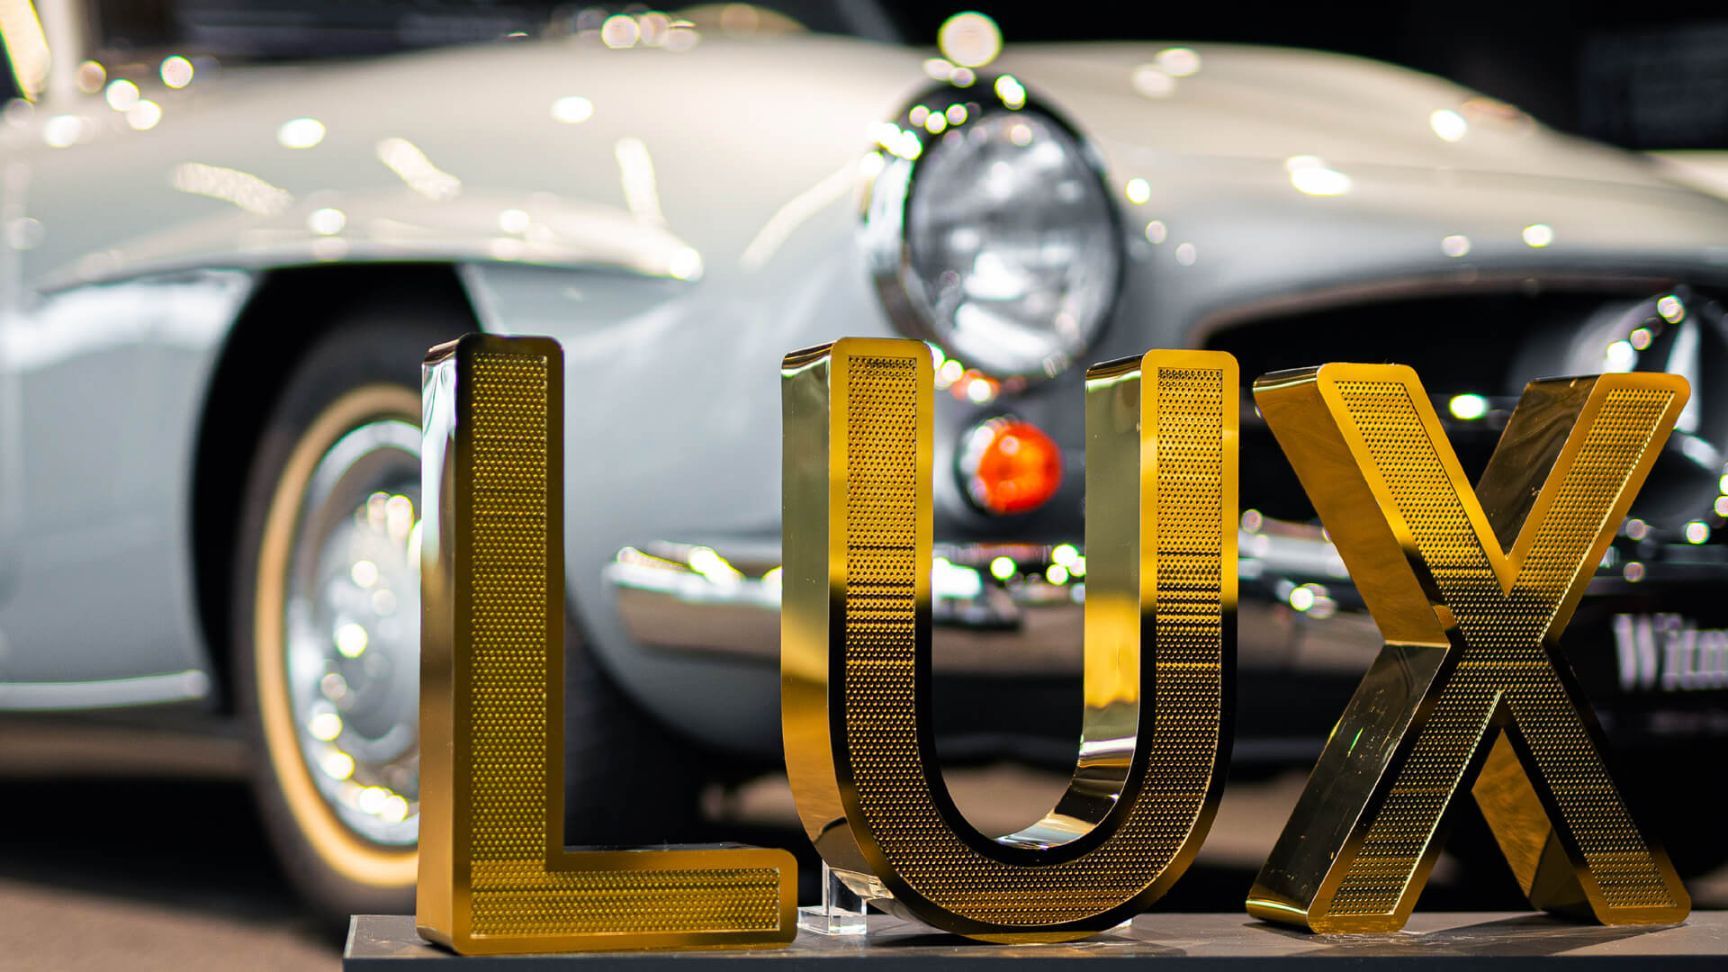 Lettres en acier inoxydable perforé LUX - Lettres LUX en acier inoxydable perforé brillant et doré, dans le showroom Mercedes